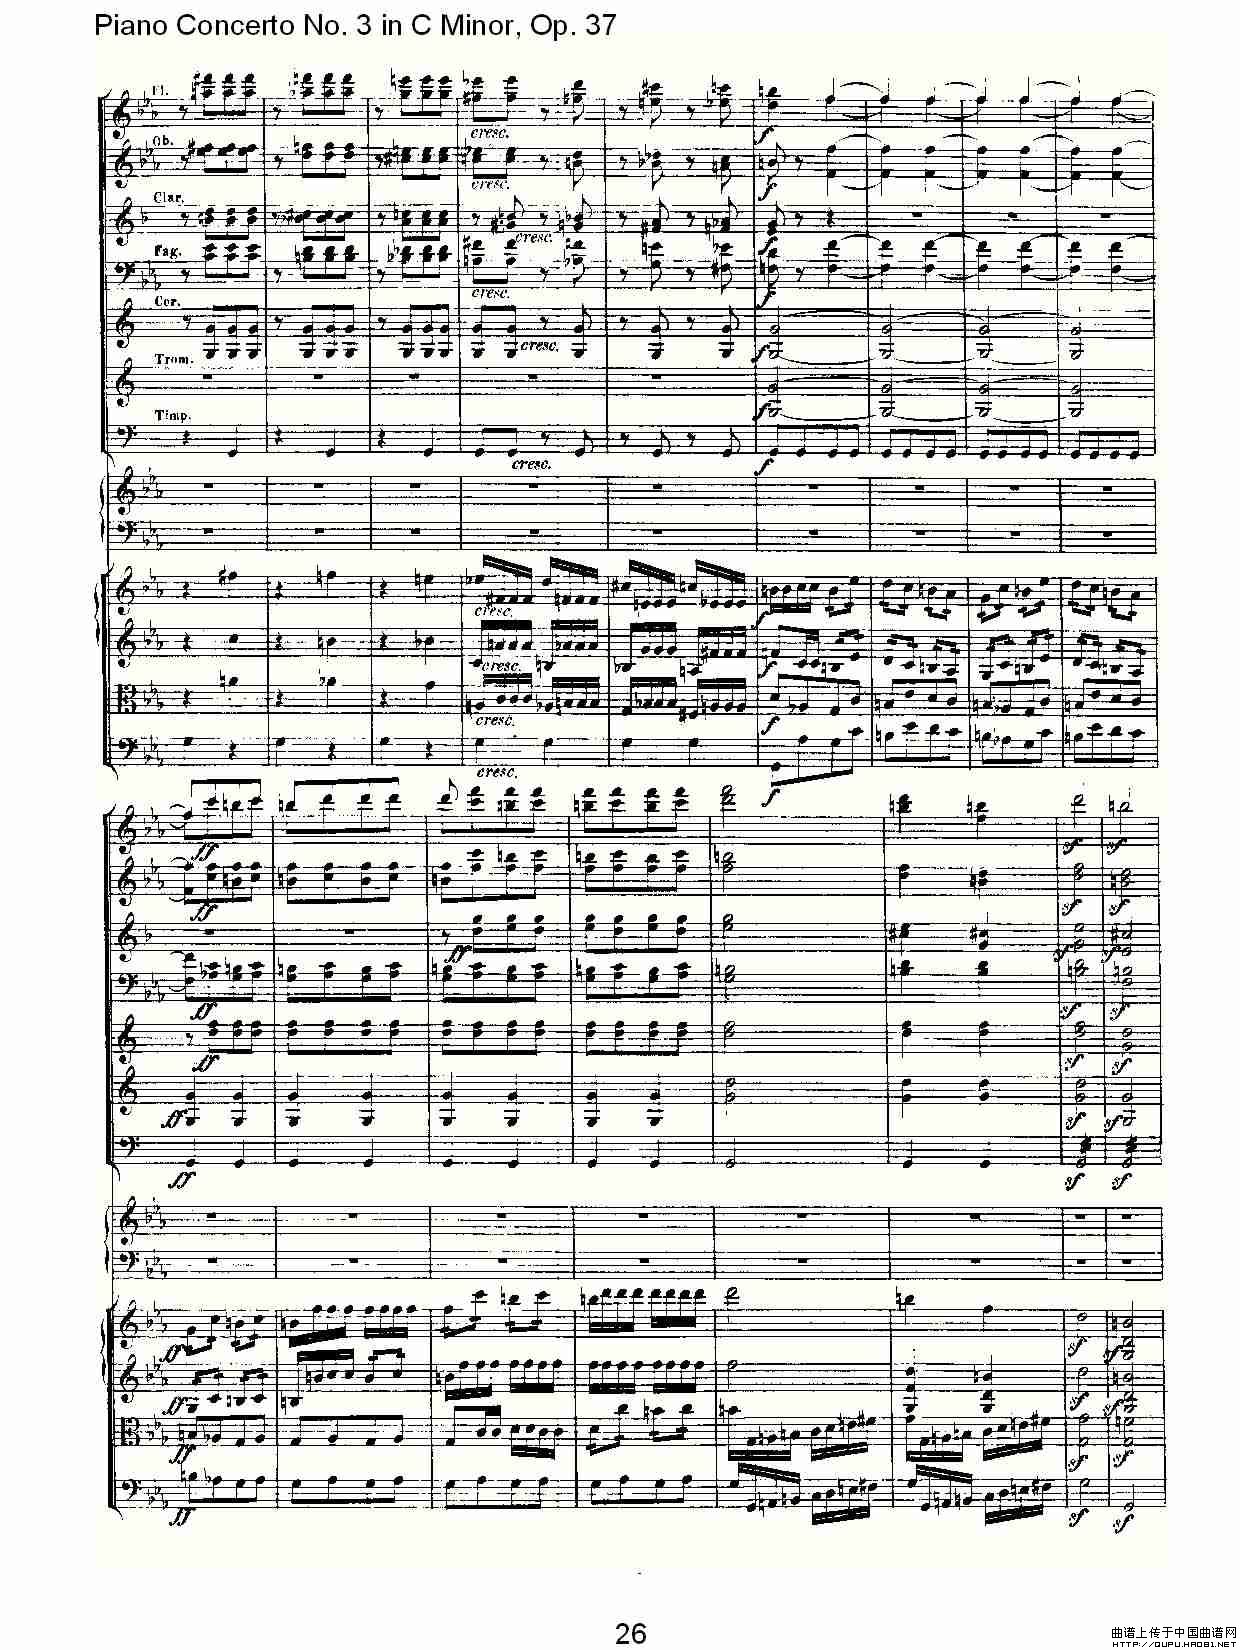 《C小调钢琴第三协奏曲 Op.37  第三乐章》钢琴曲谱图分享